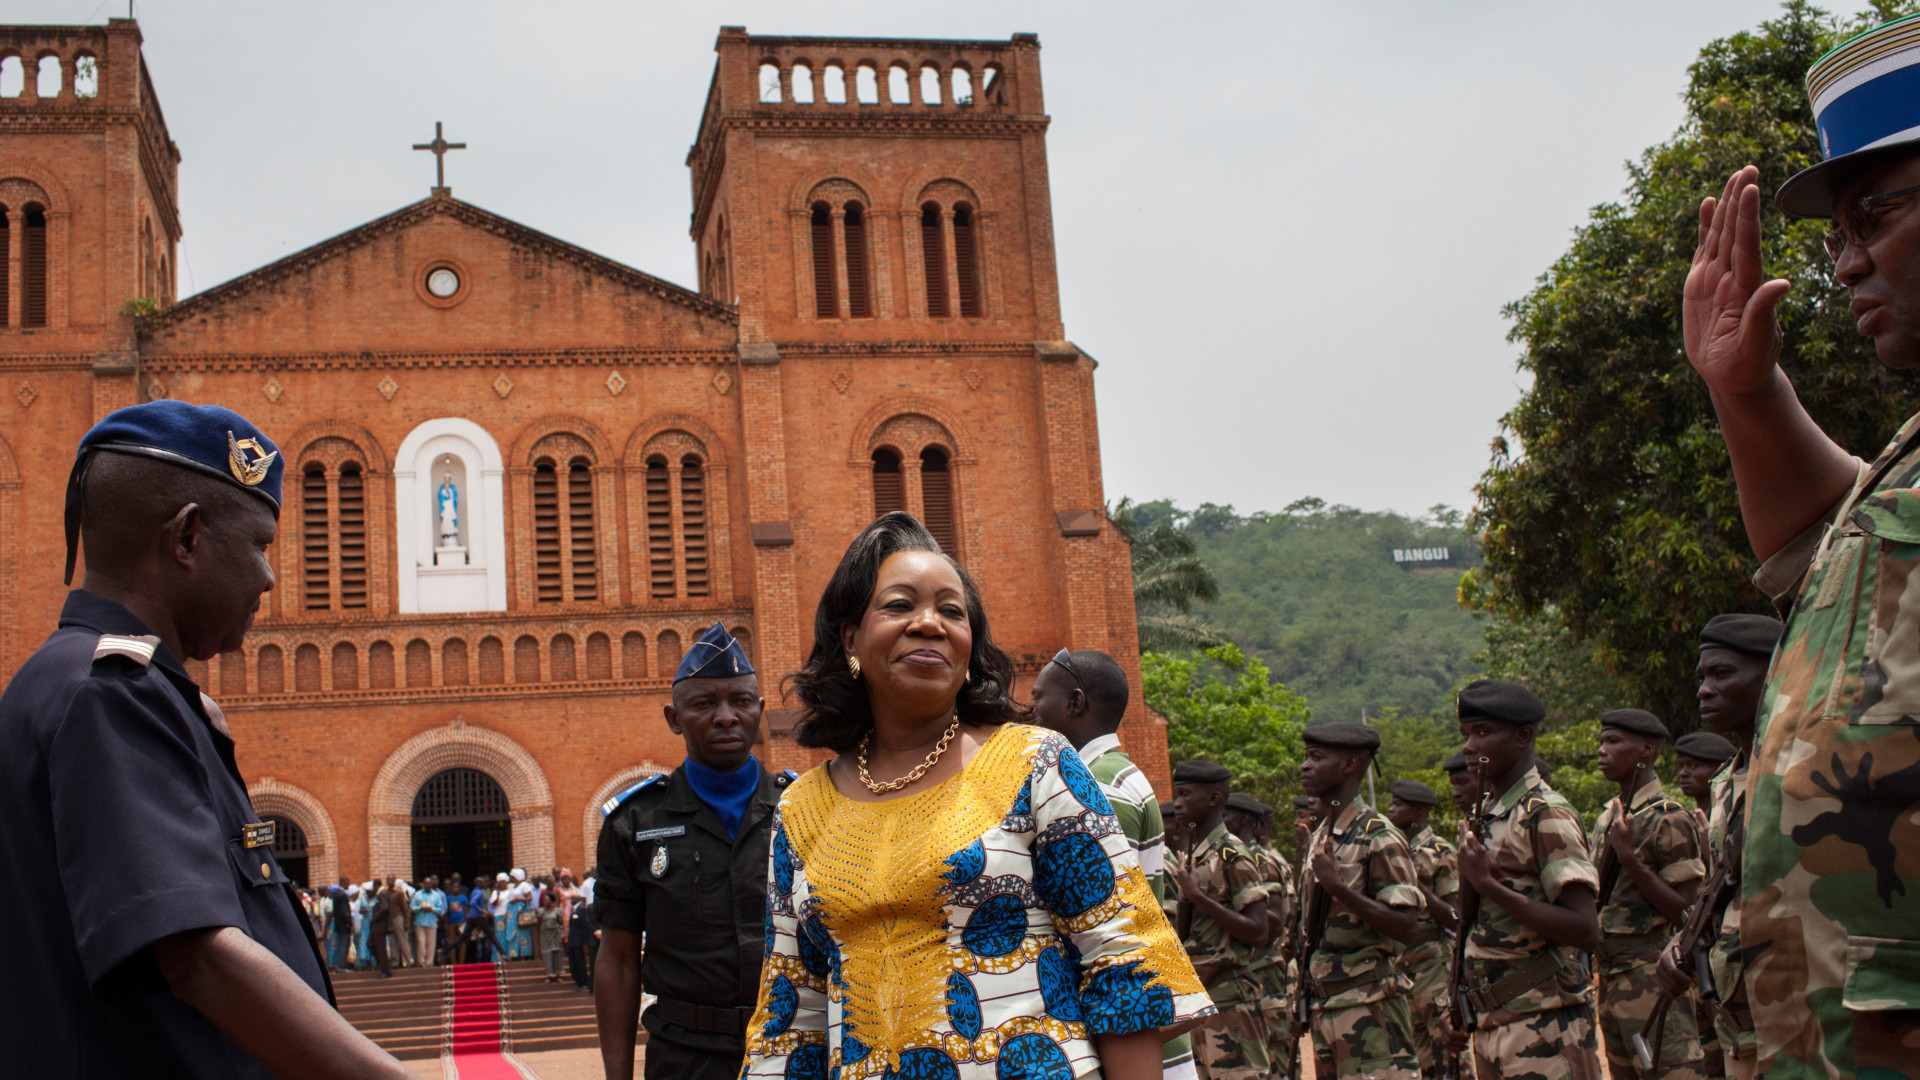 Le pape devrait ouvrir une "porte sainte" à la cathédrale de Bangui, en Centrafrique (Photo: Michael Christopher Brown/Keystone)